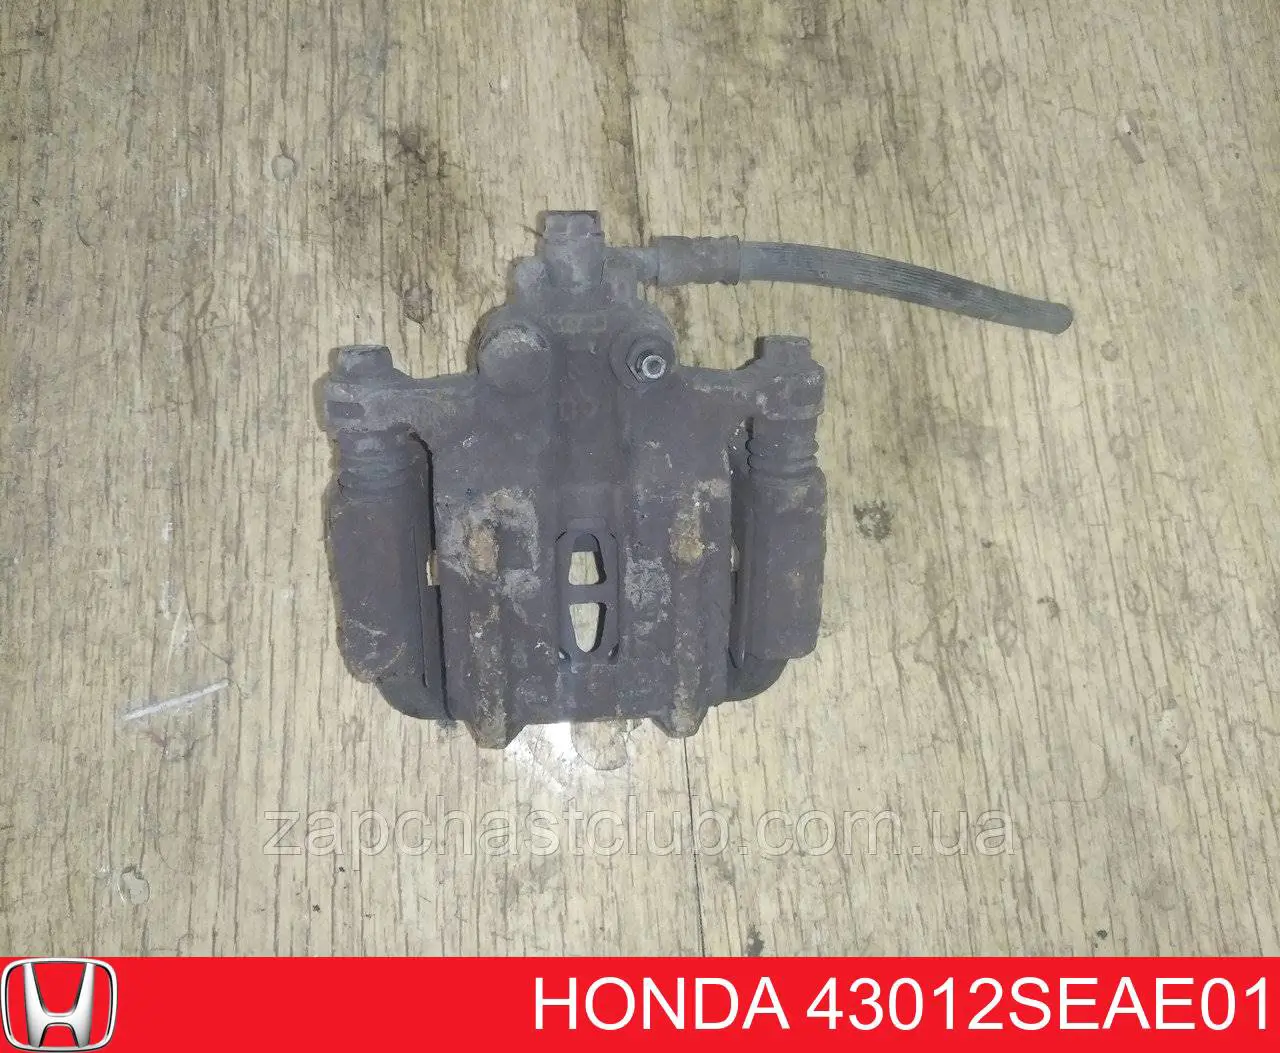 Суппорт тормозной задний правый Honda 43012SEAE01